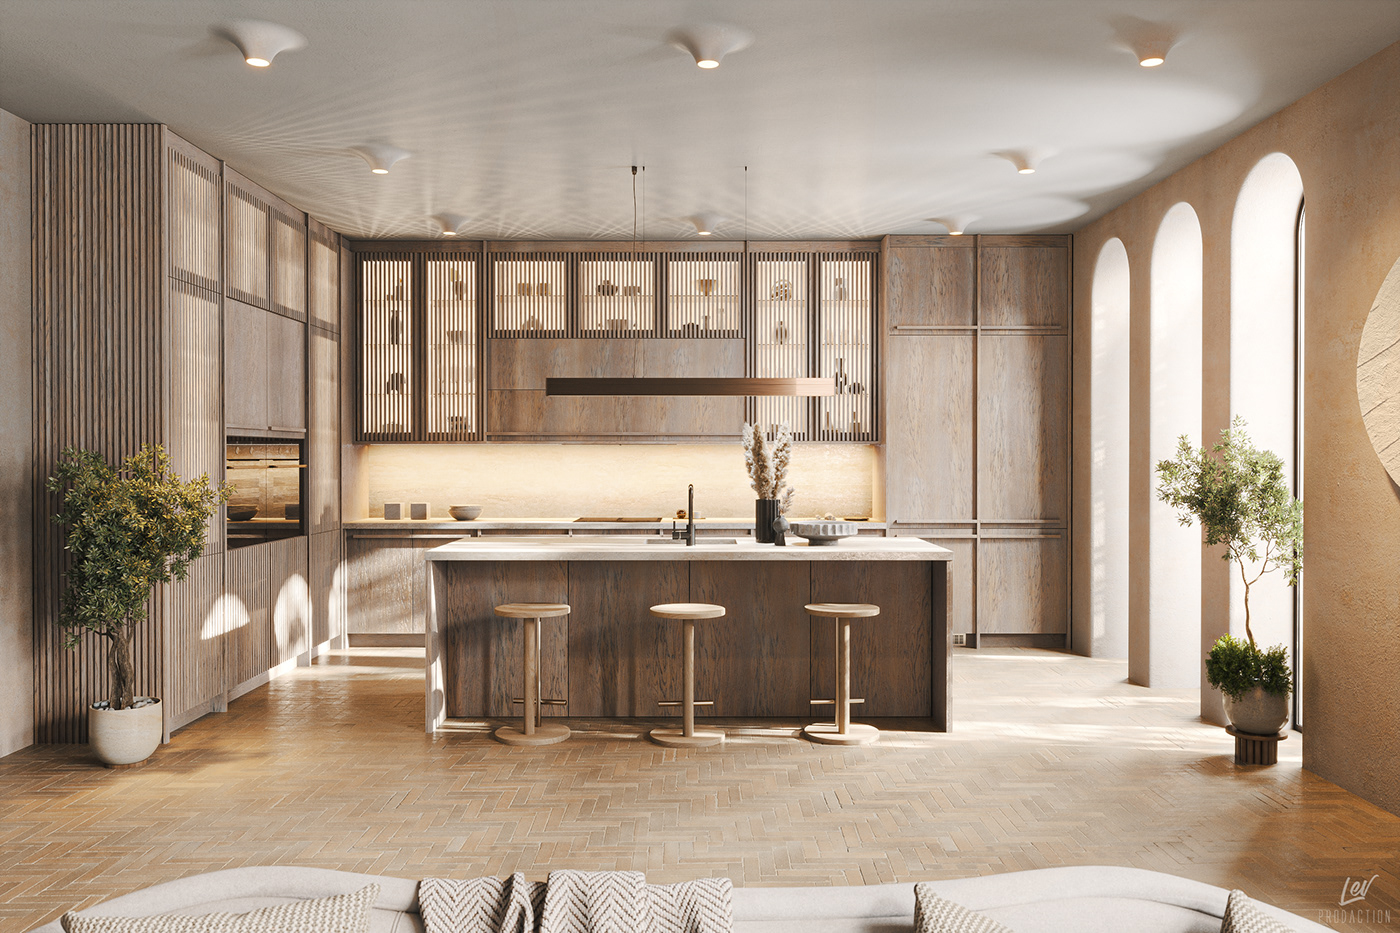 modern kitchen visualization design oak Floor Tiles japanese style Kitchen island arched windows Interior Travertine